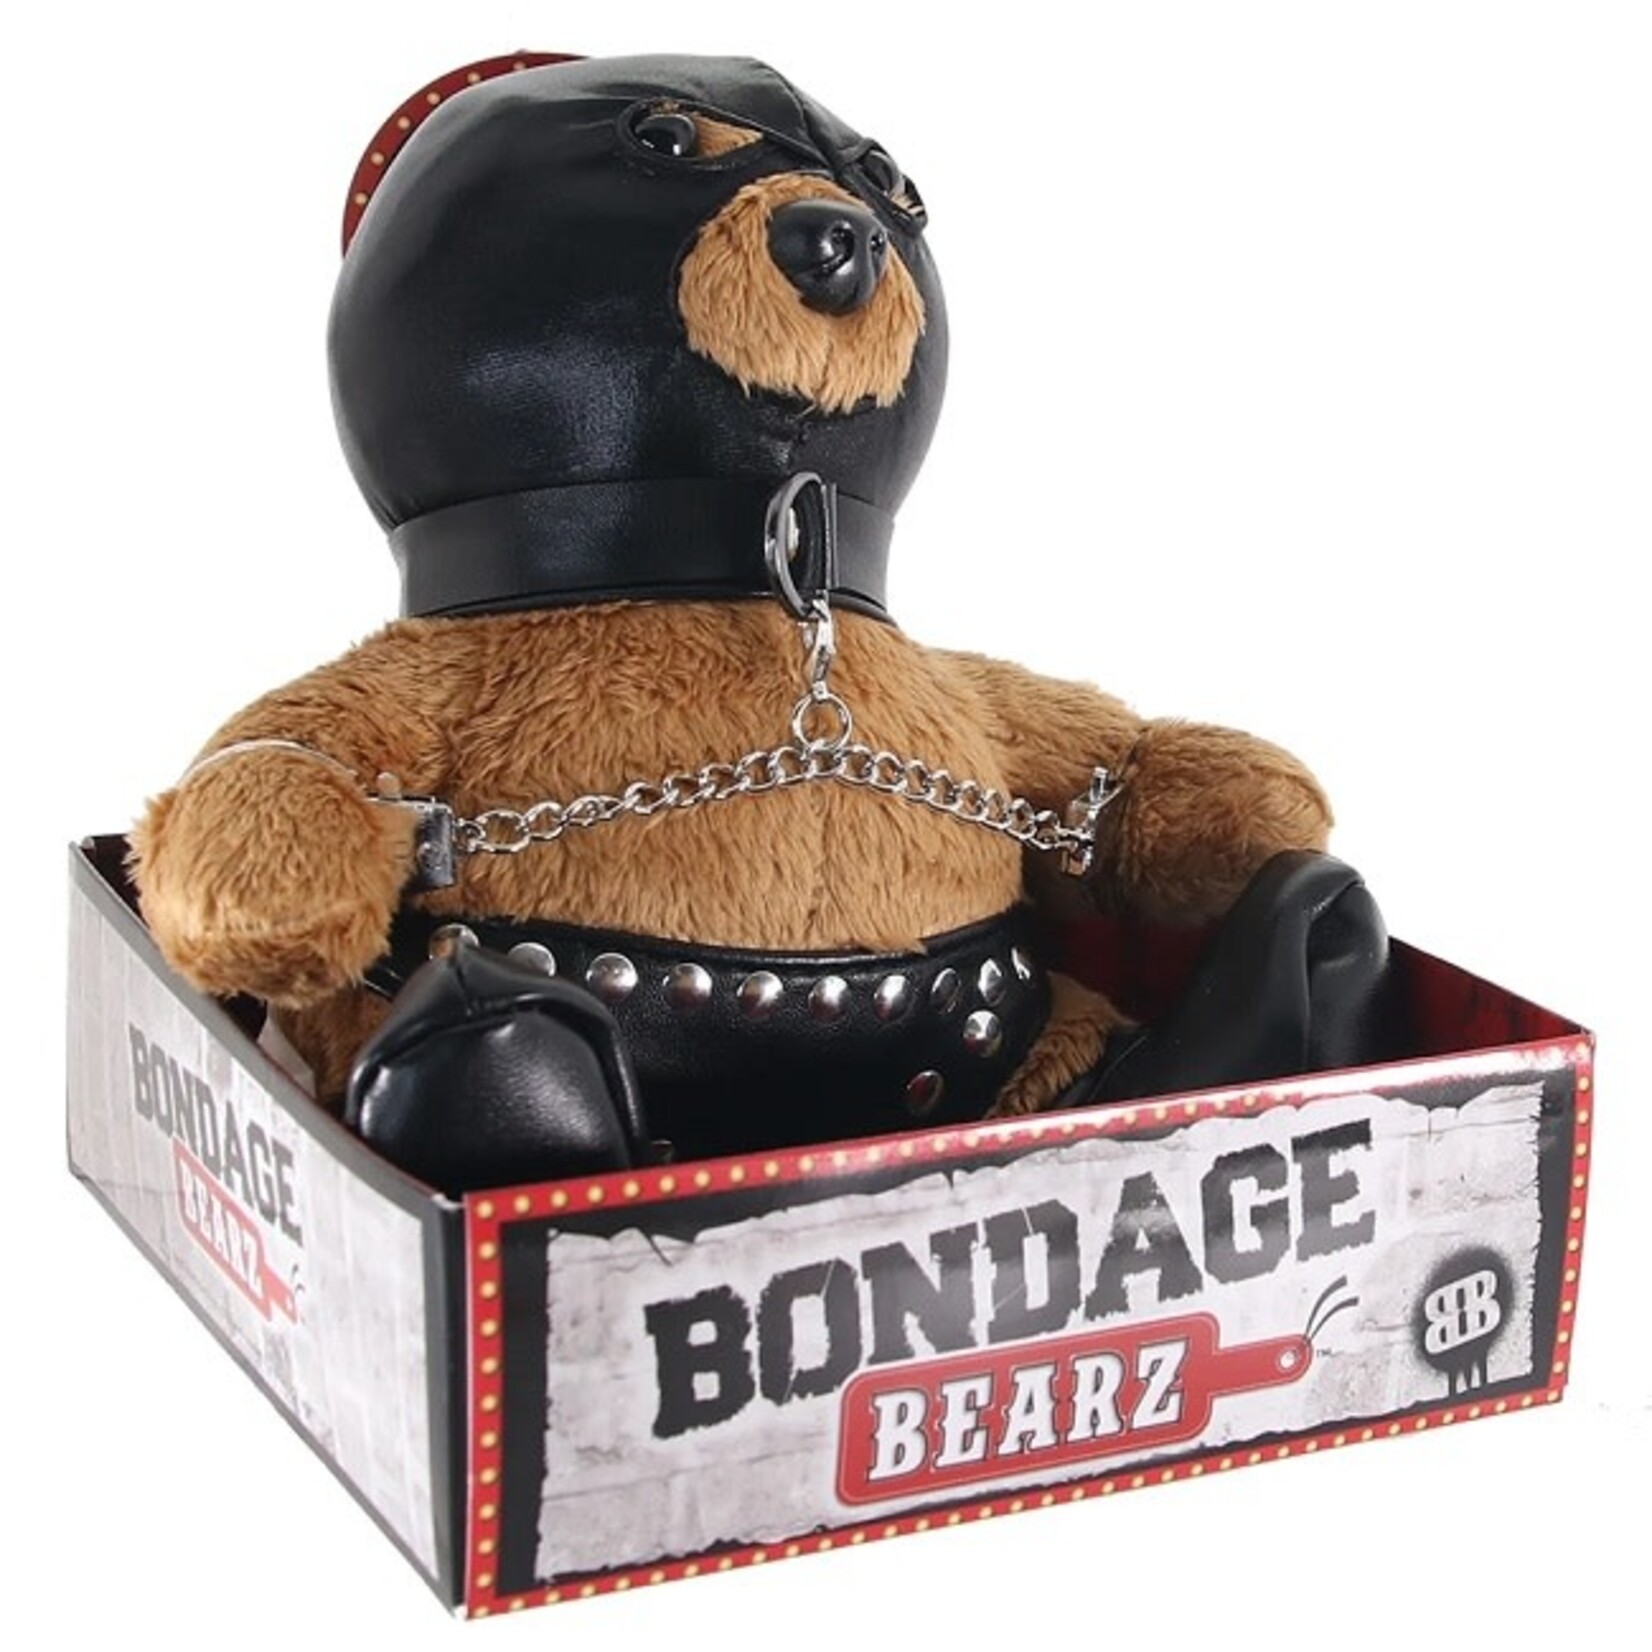 Bondage Bearz Sal The Slave